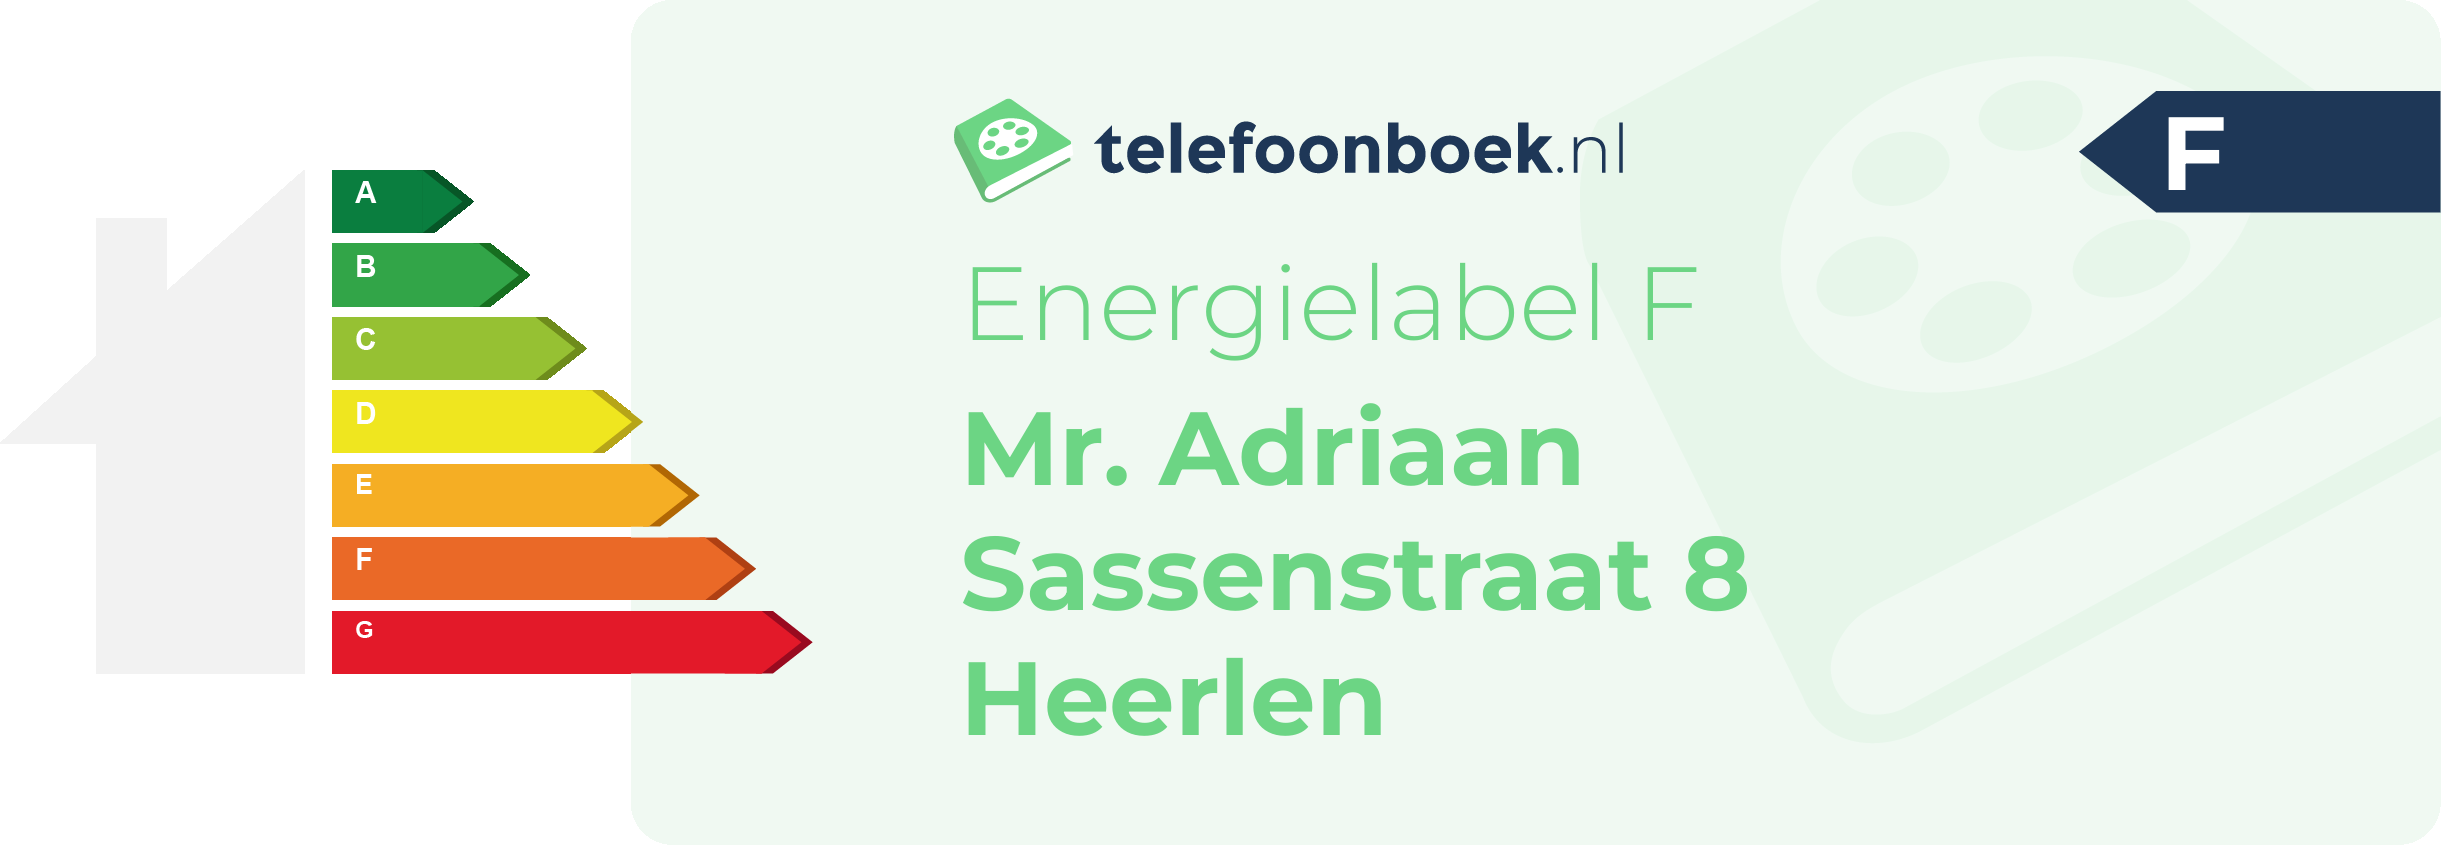 Energielabel Mr. Adriaan Sassenstraat 8 Heerlen